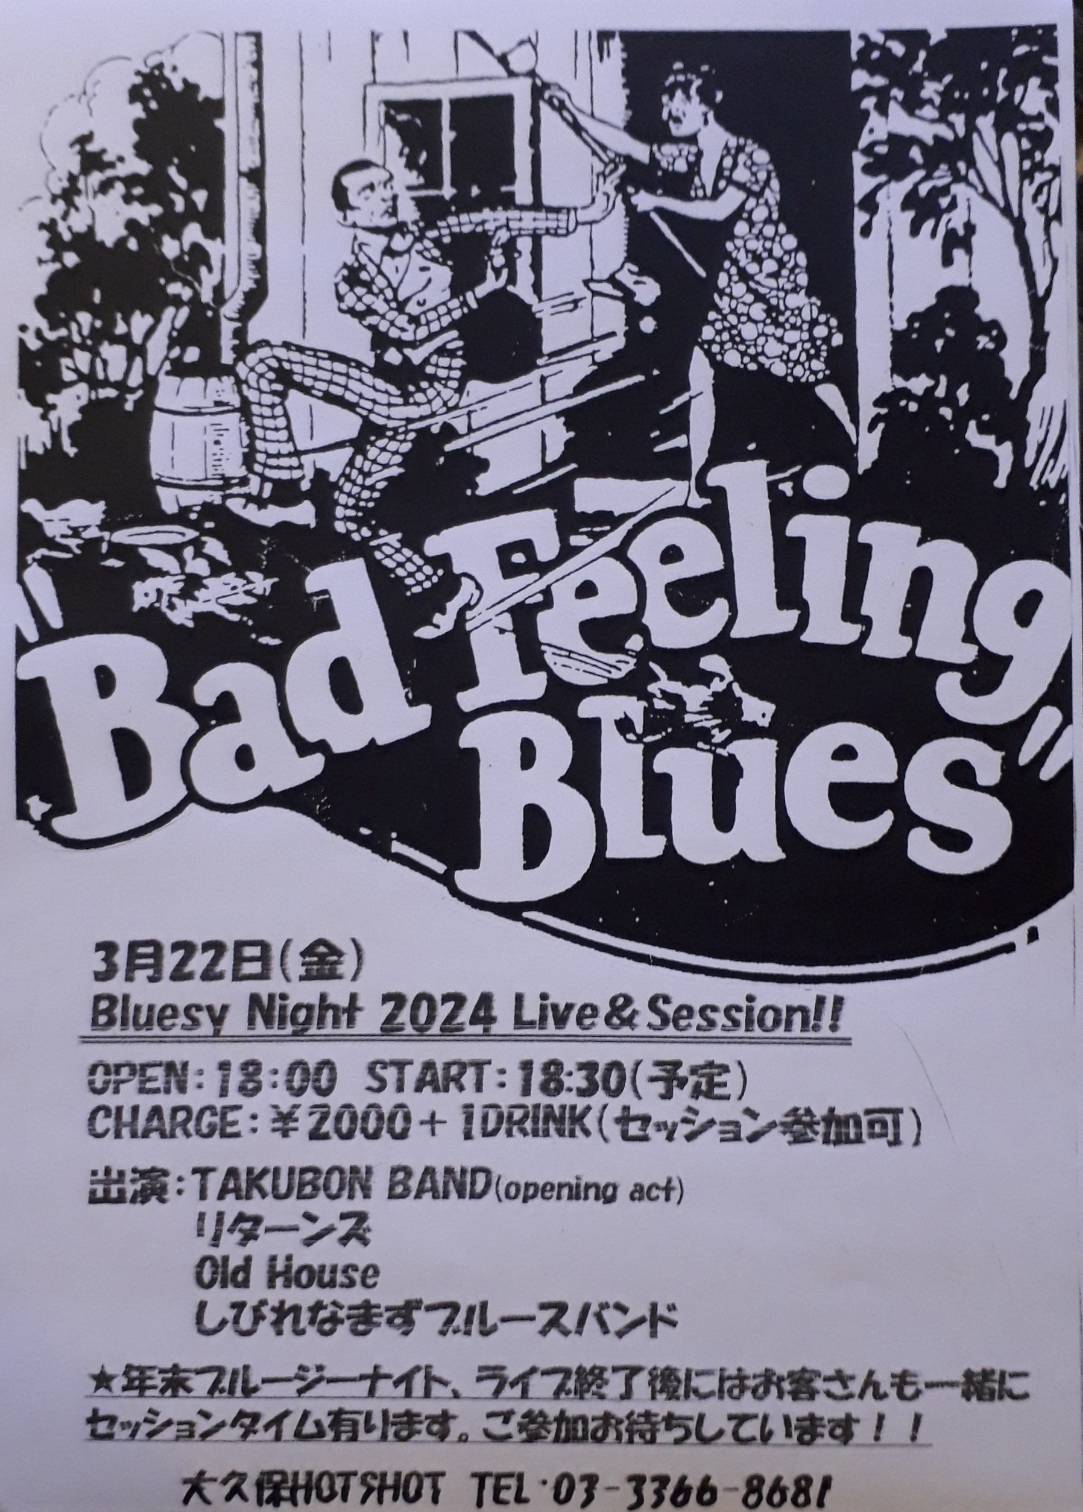 Bad Feeling Blues